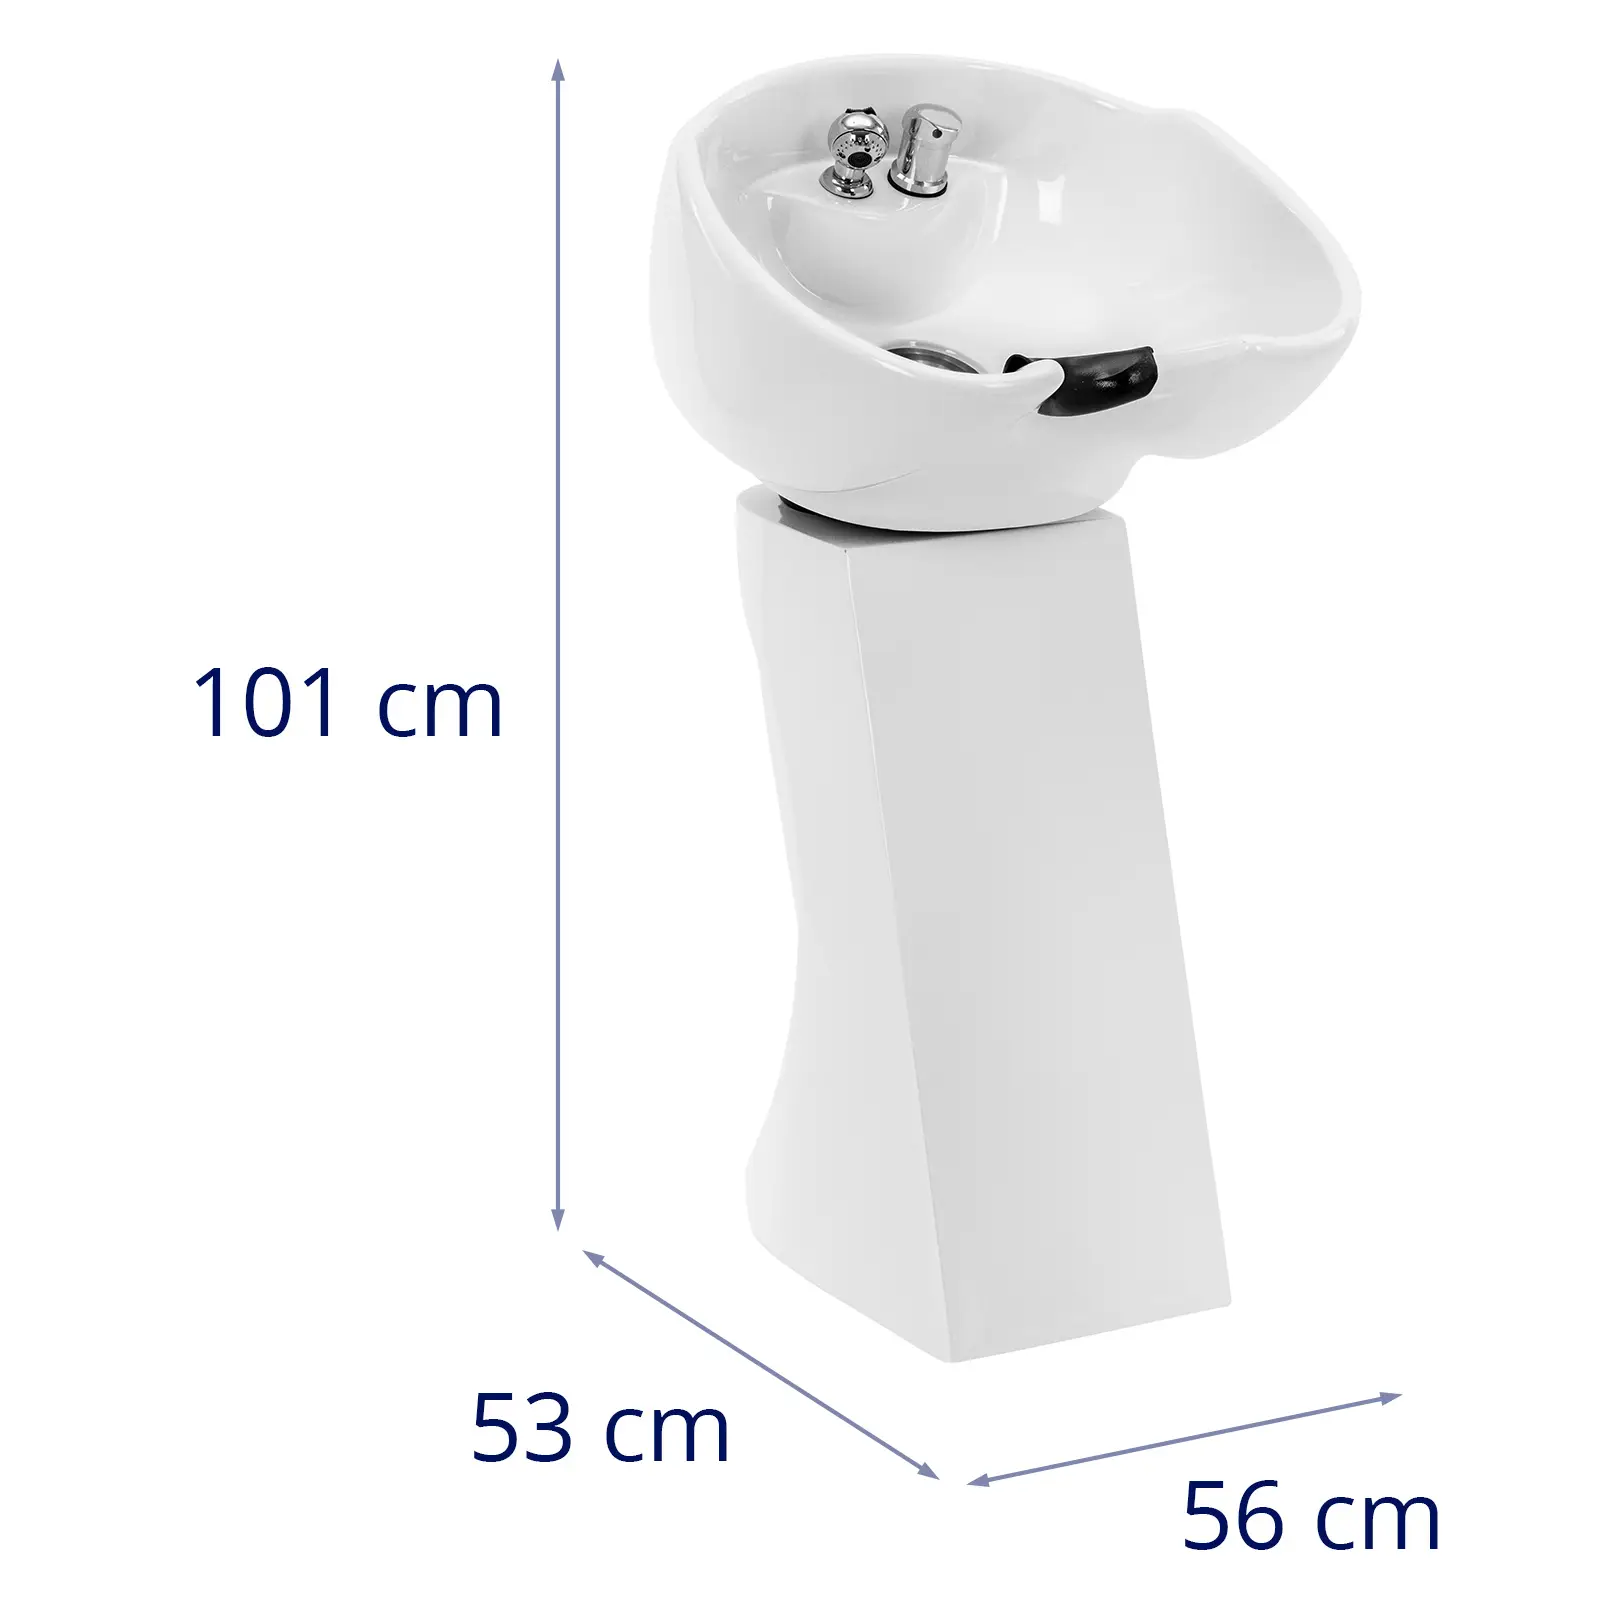 Bac à shampoing - inclinable - avec robinet mitigeur, flexible et douchette